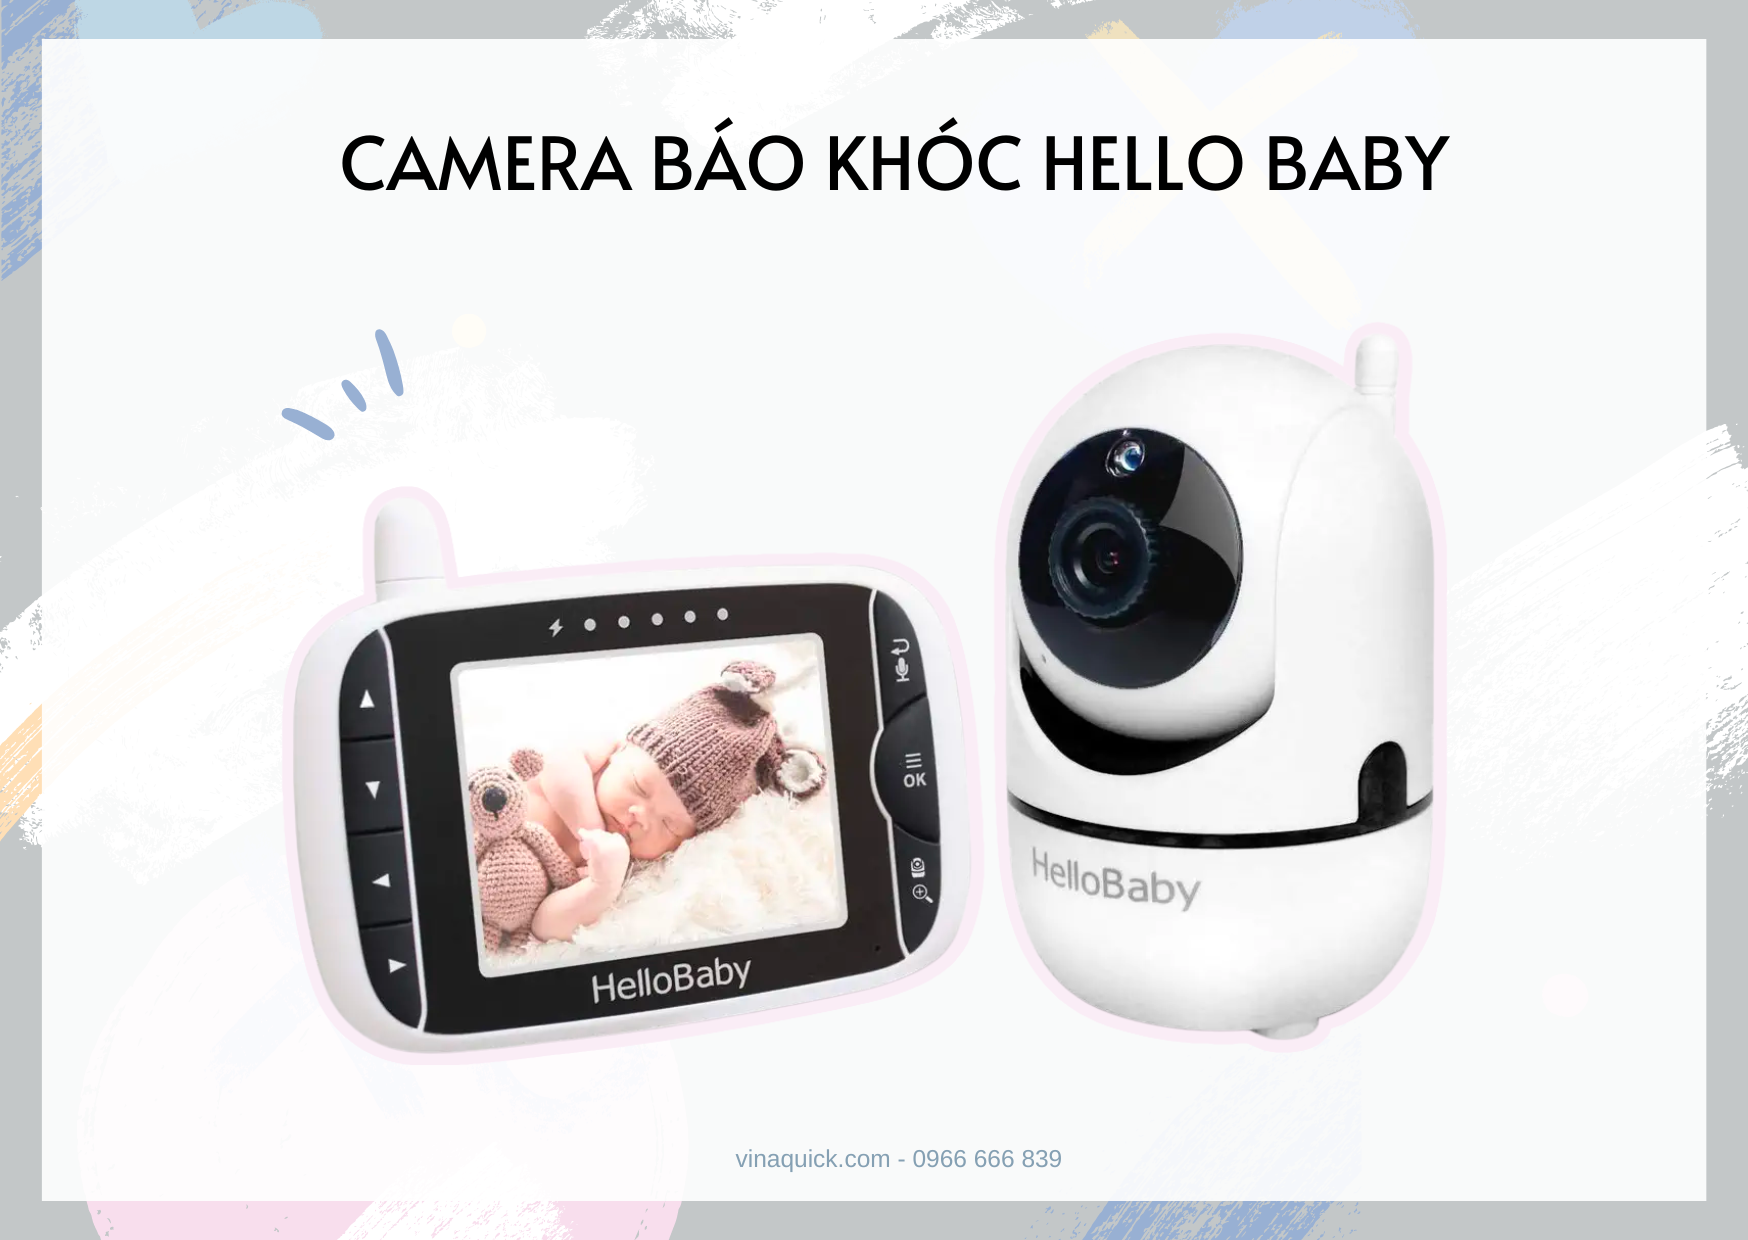  Camera theo dõi - báo khóc HelloBaby HB6550 (5 inch) 